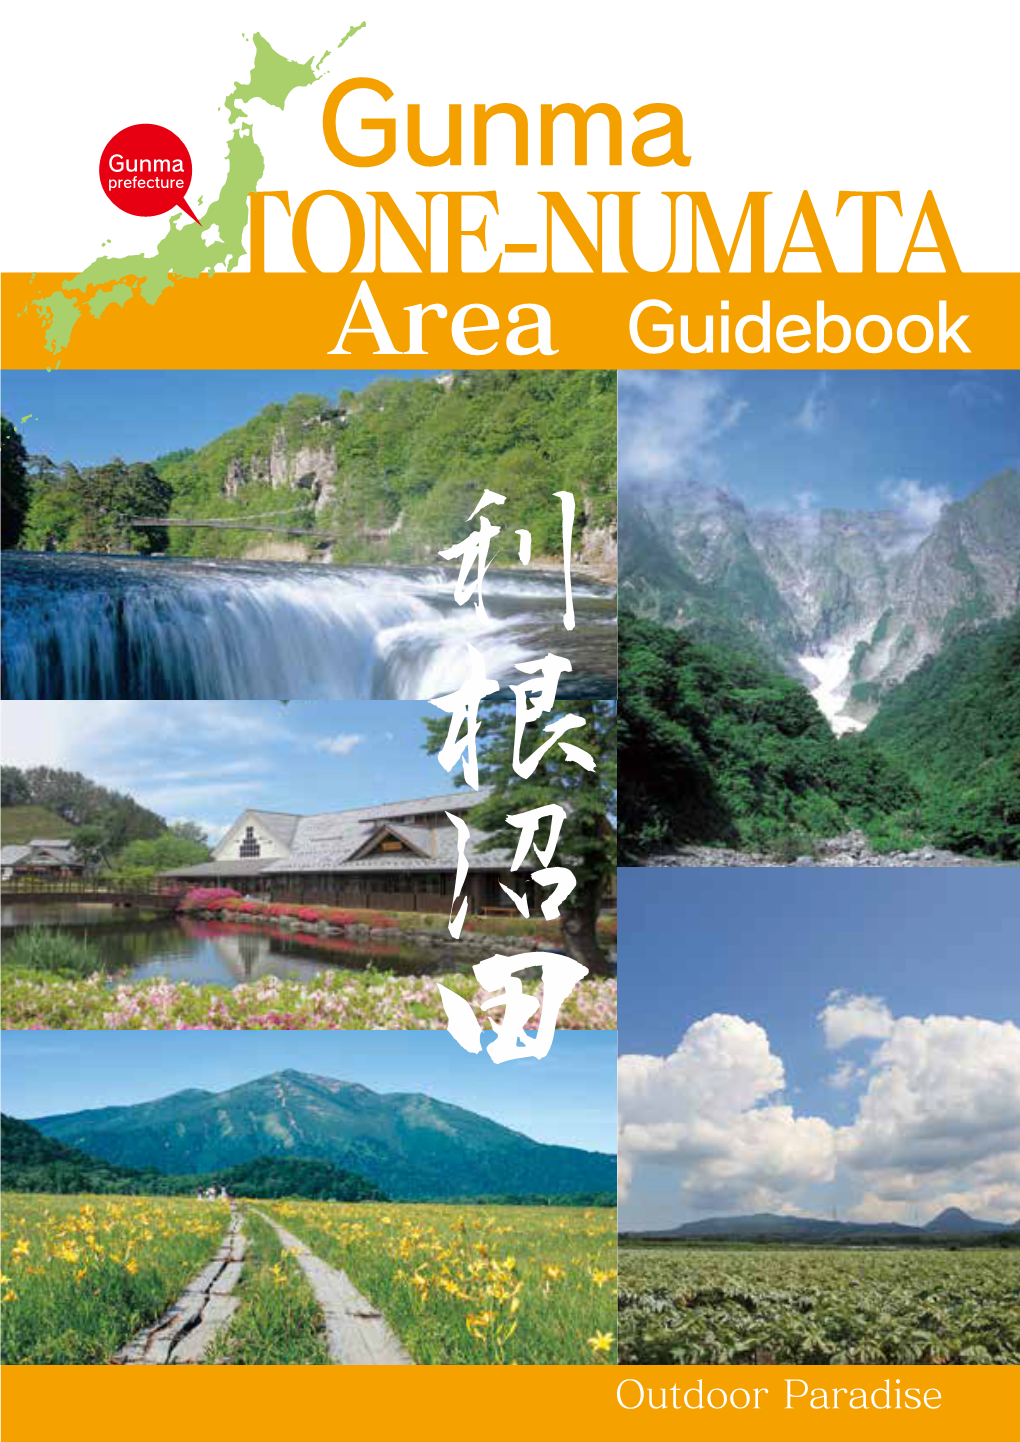 TONE-NUMATA Area Guidebook